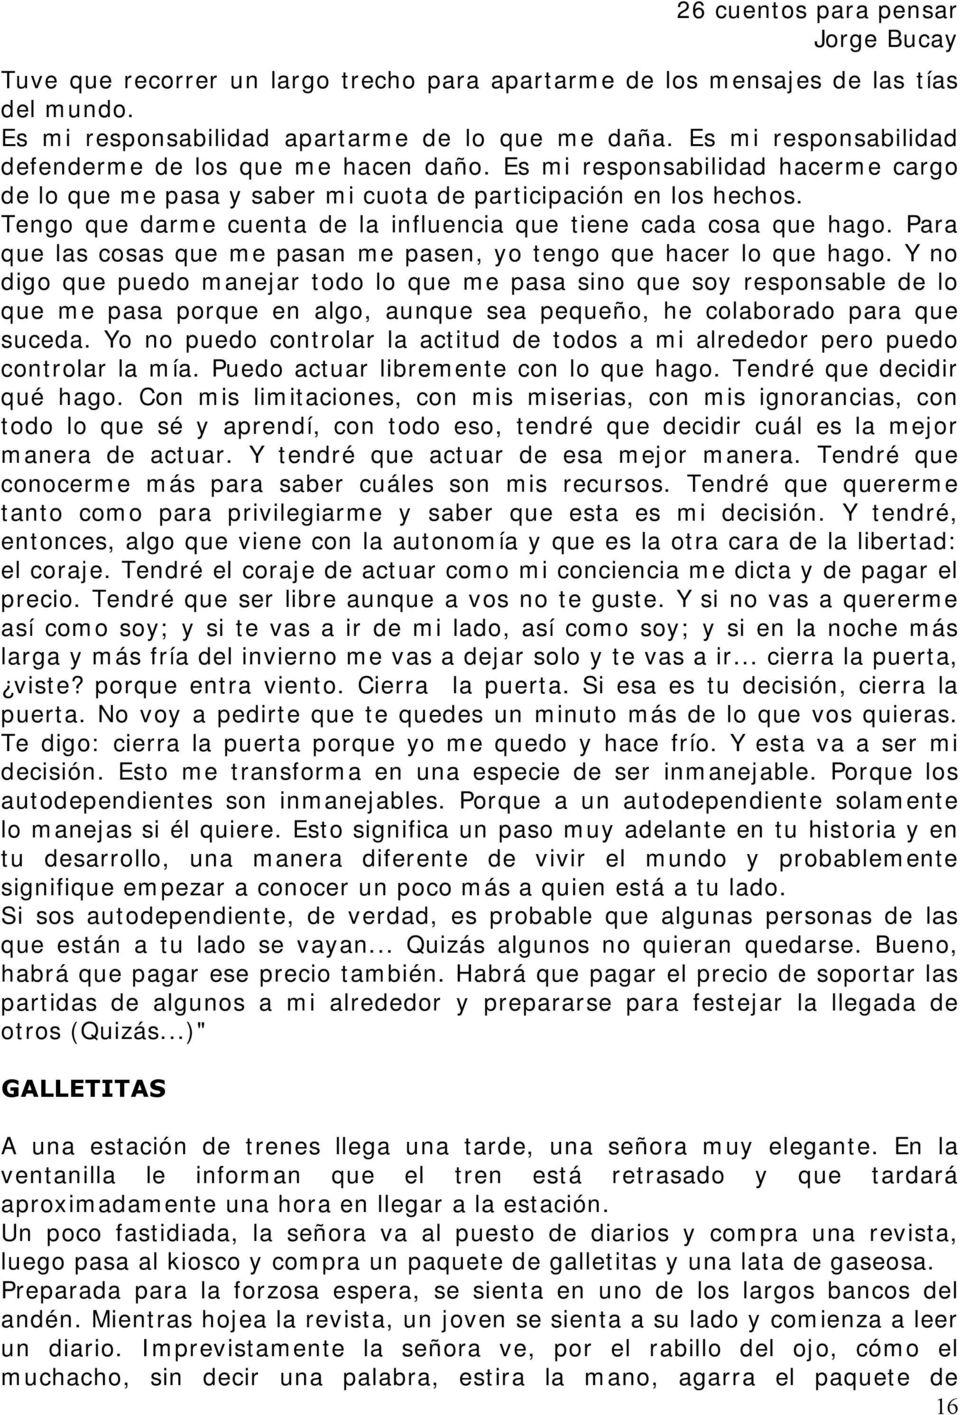 progresivo Perceptible Extensamente 26 cuentos para pensar Jorge Bucay COMO CRECER? - PDF Descargar libre